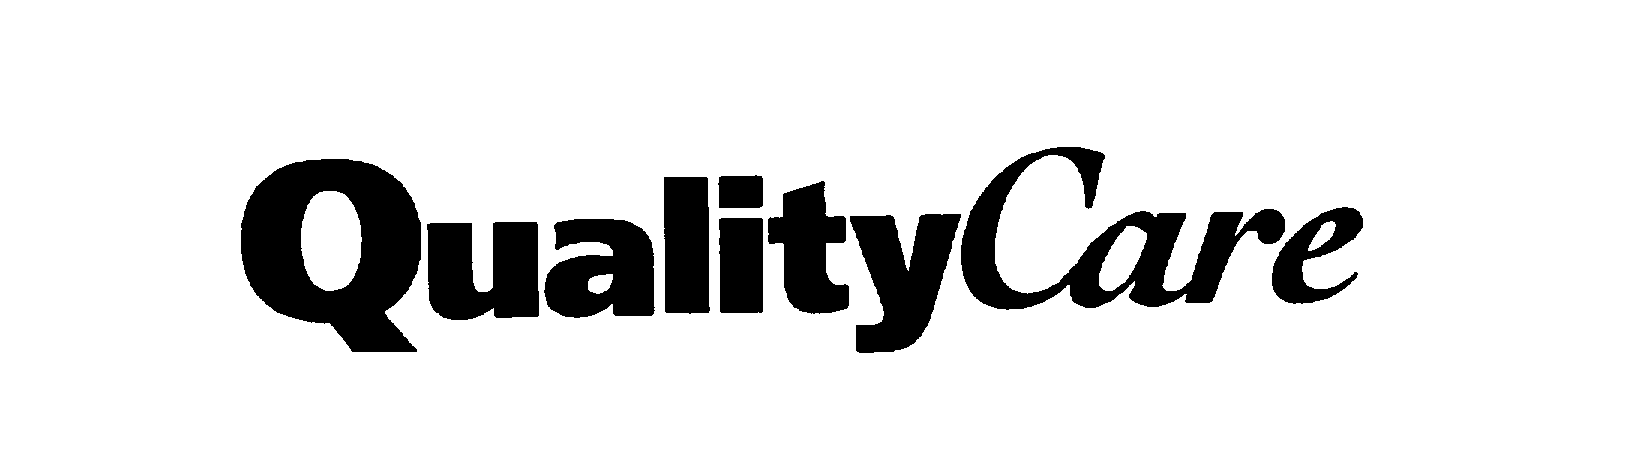 Trademark Logo QUALITY CARE